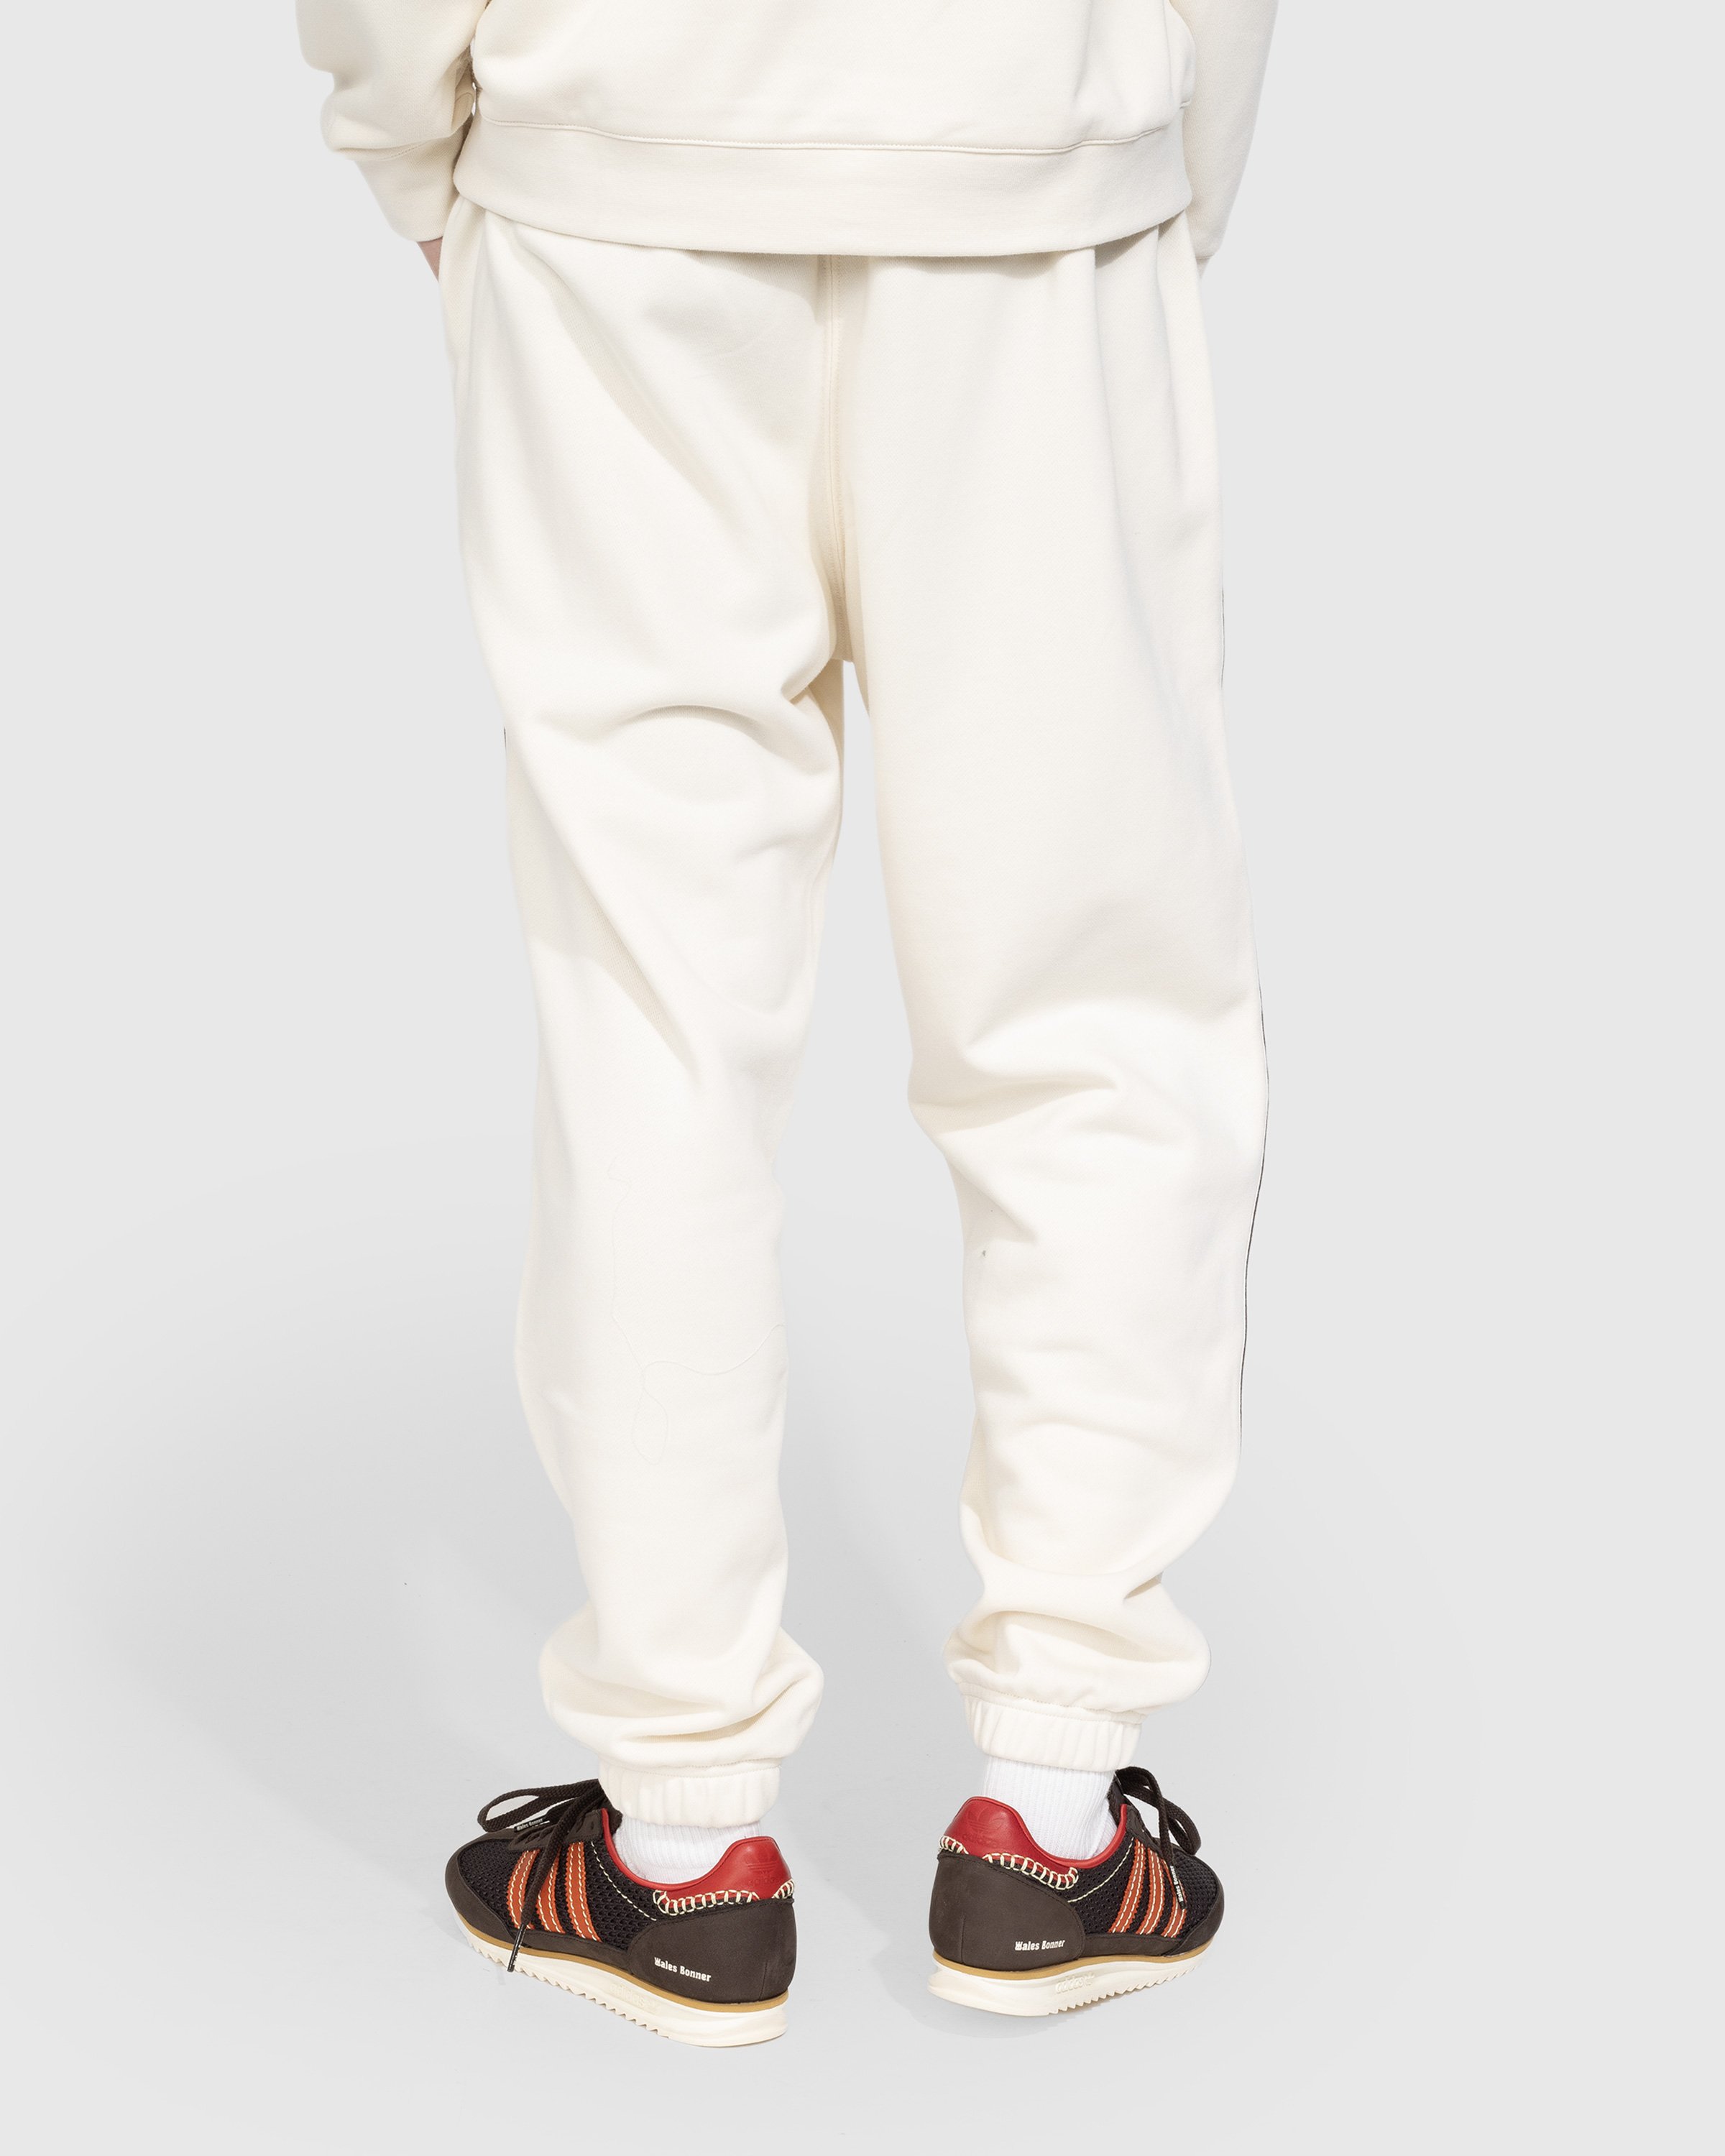 Adidas x Wales Bonner - Sweatpants Wonder White - Clothing - Beige - Image 3